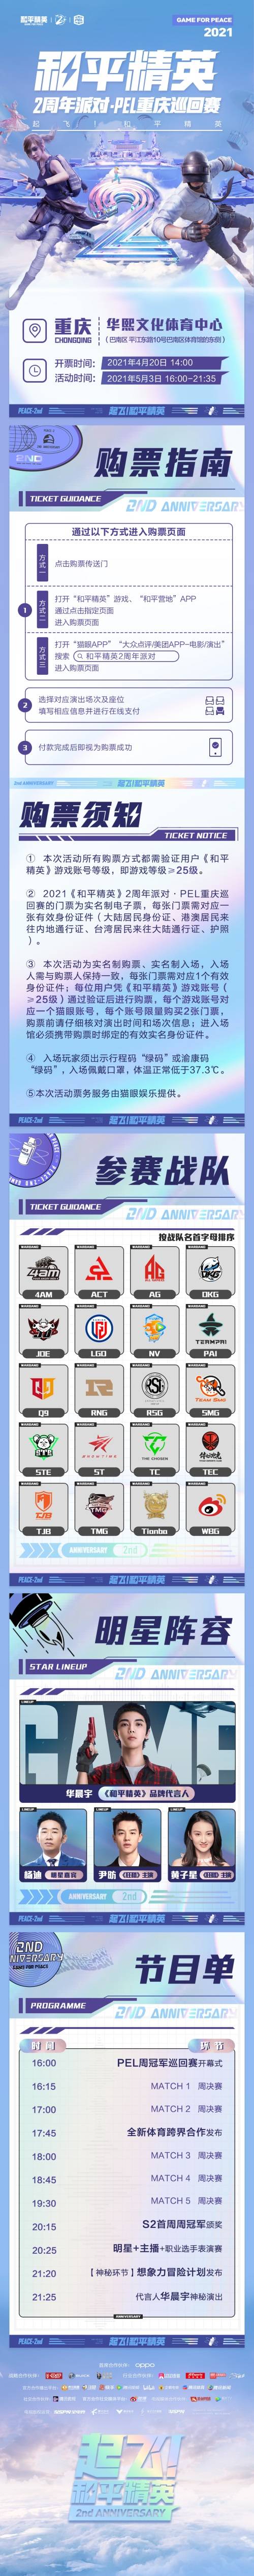 巡回赛|《和平精英》2周年派对 · PEL 重庆巡回赛4月20日开启售票！